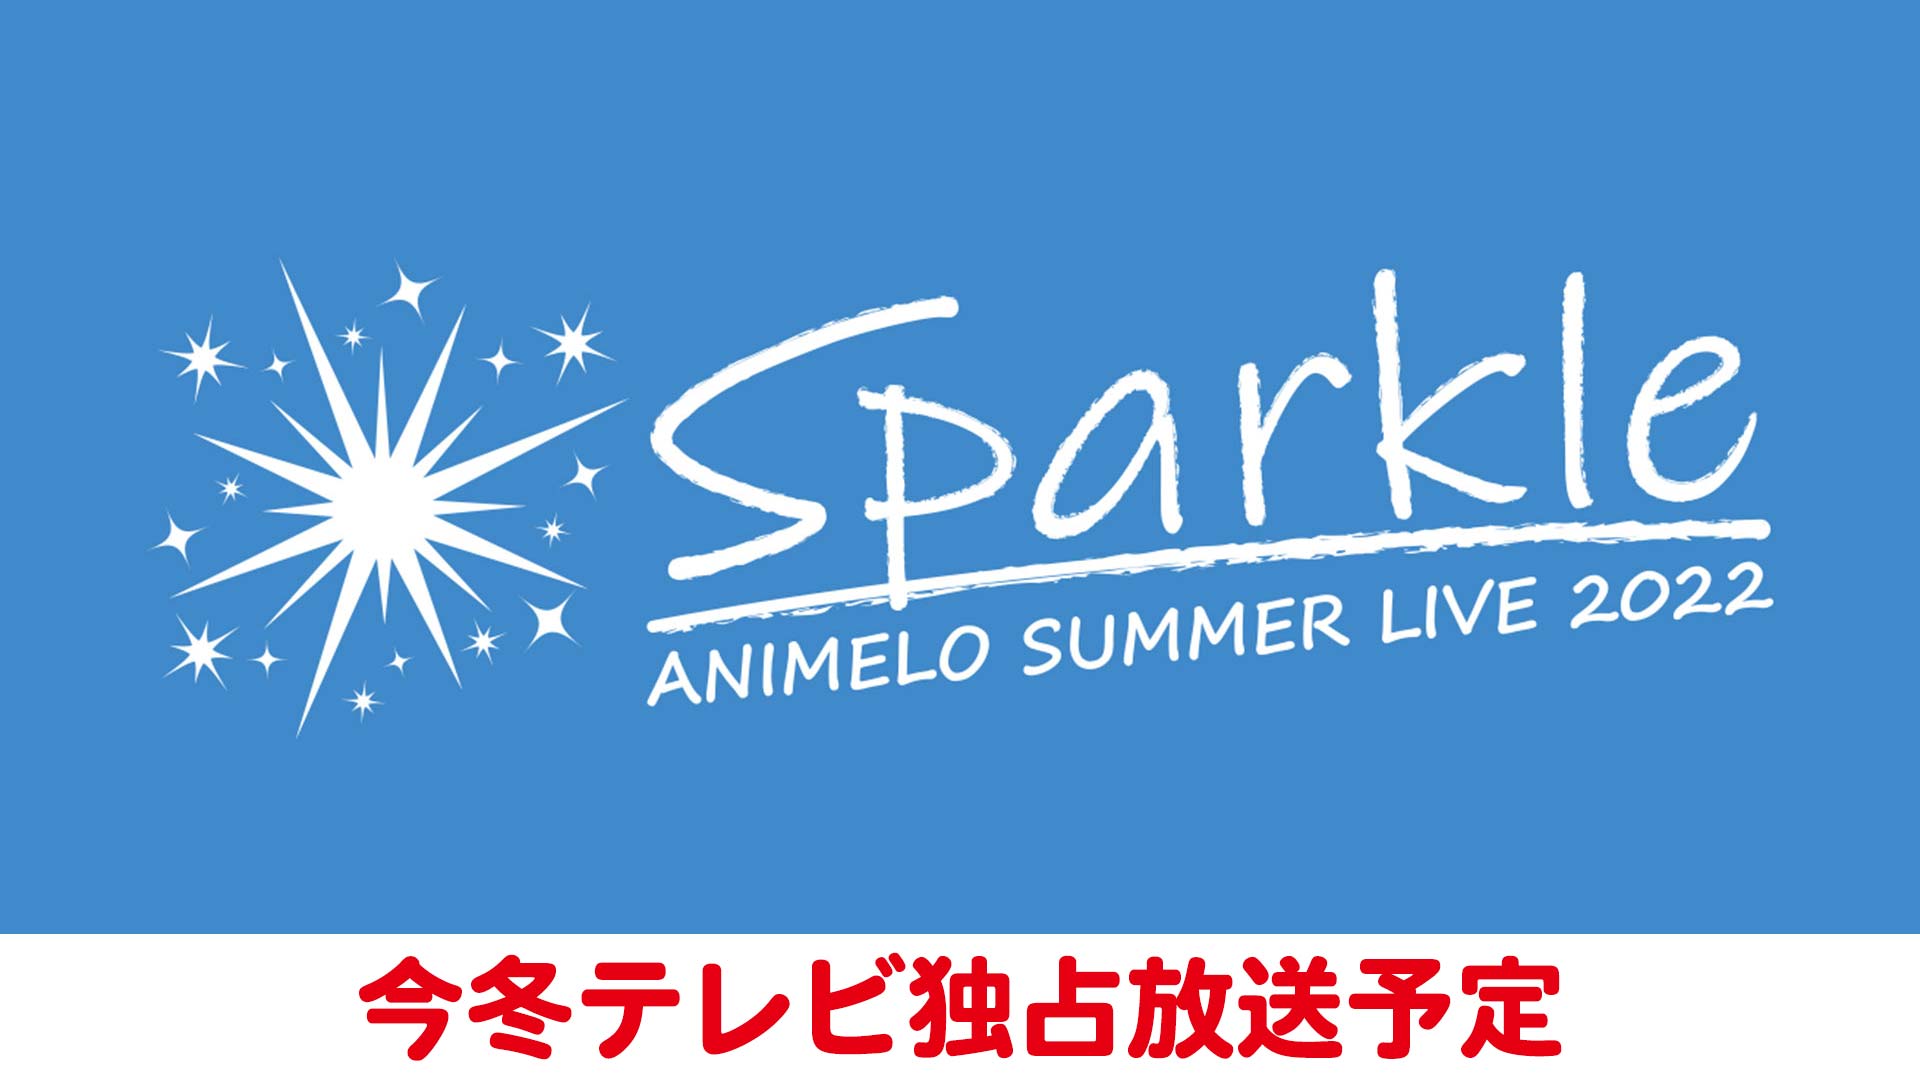 アニメロサマーライブ2022 -Sparkle- powered by Anison Days